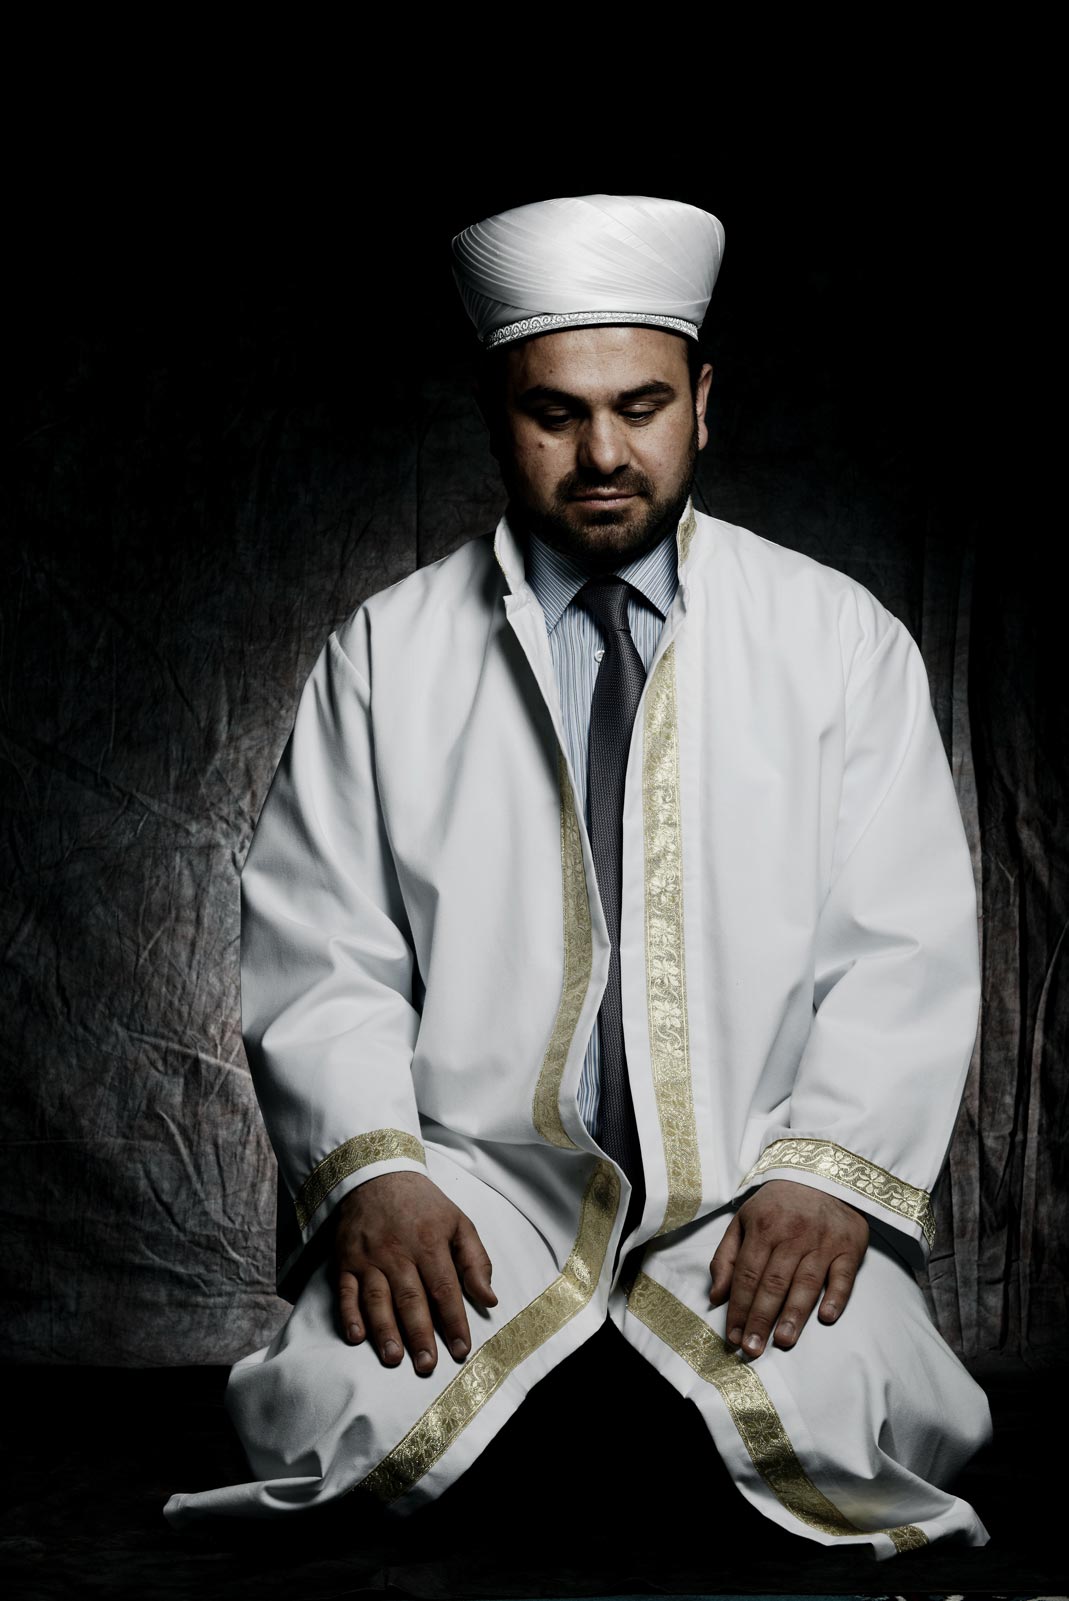 Müfit Sevinç, 40, Imam an der Sehitlik-Moschee am Columbiadamm